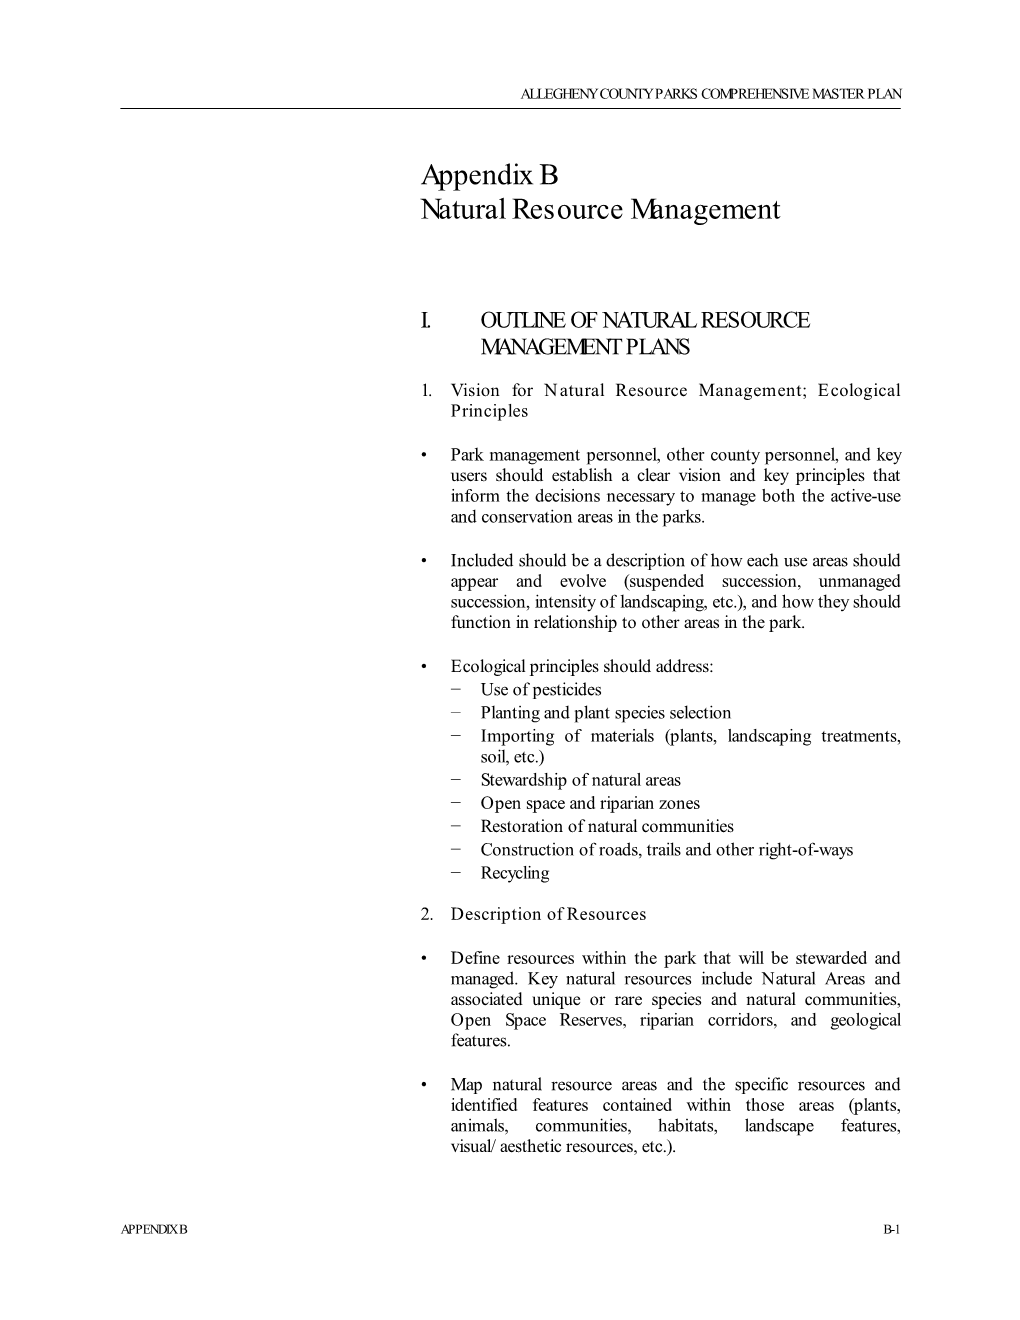 Appendix B Natural Resource Management